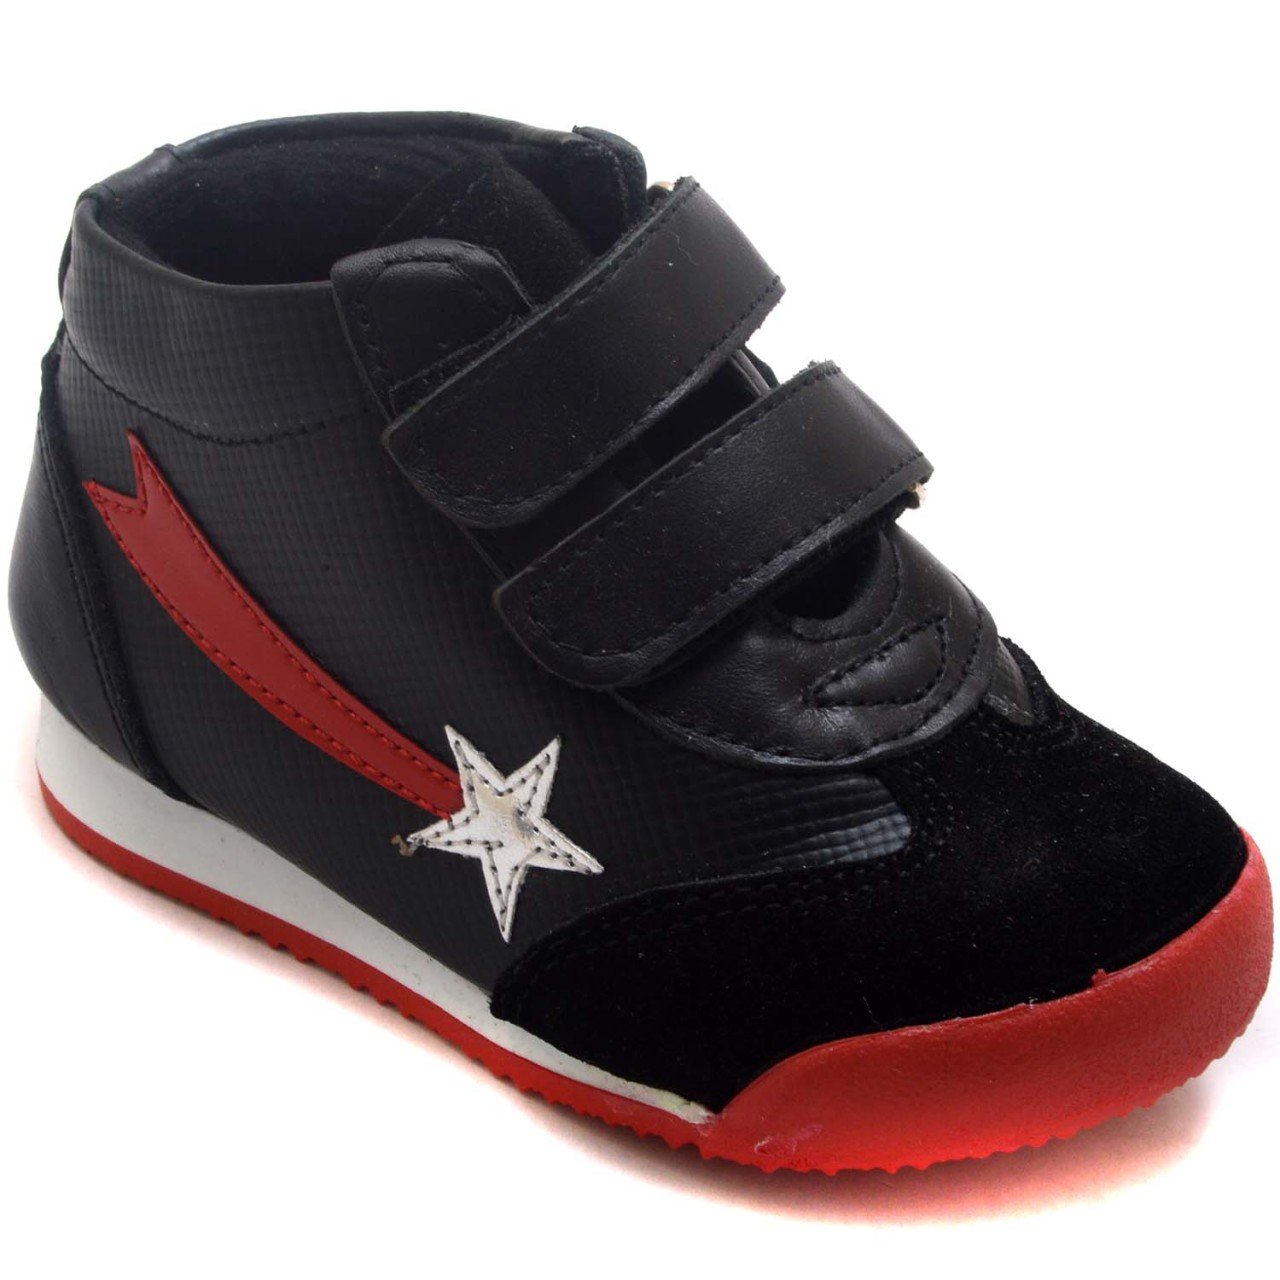 NM-20 Bebe Spor Yıldız Model Kışlık Ayakkabı - Siyah (Deri)